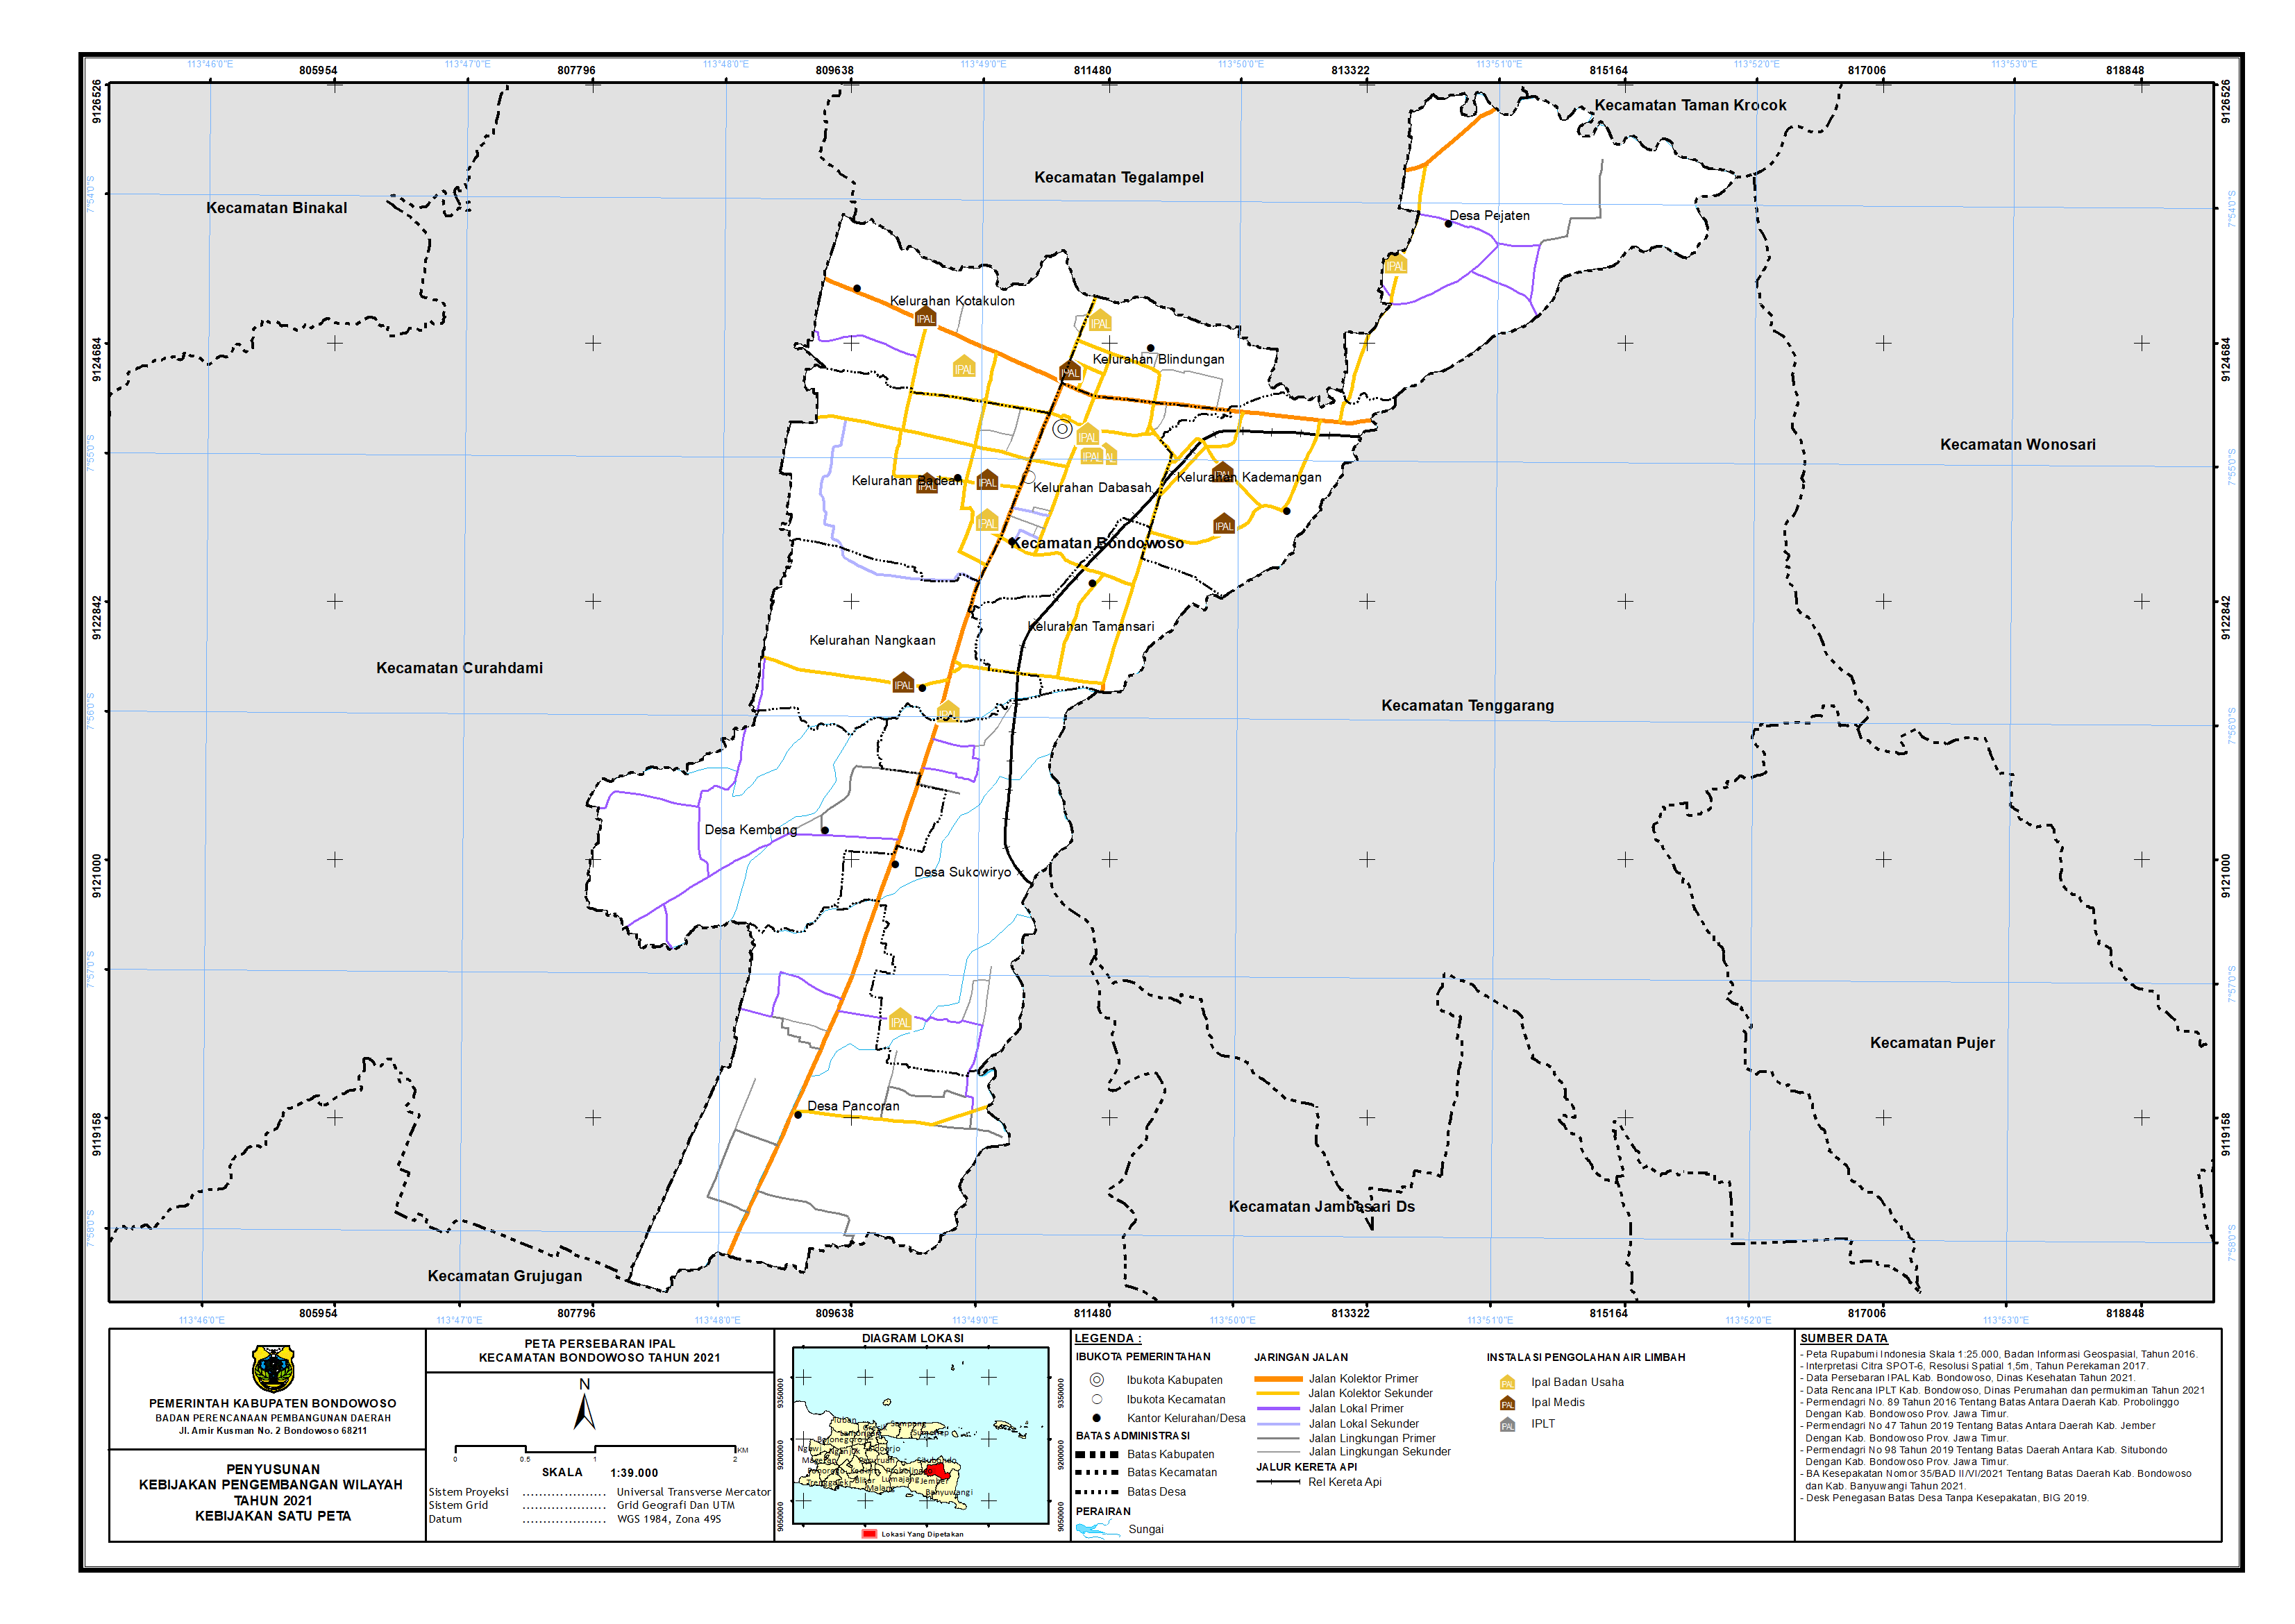 Peta Persebaran IPAL Kecamatan Bondowoso.png